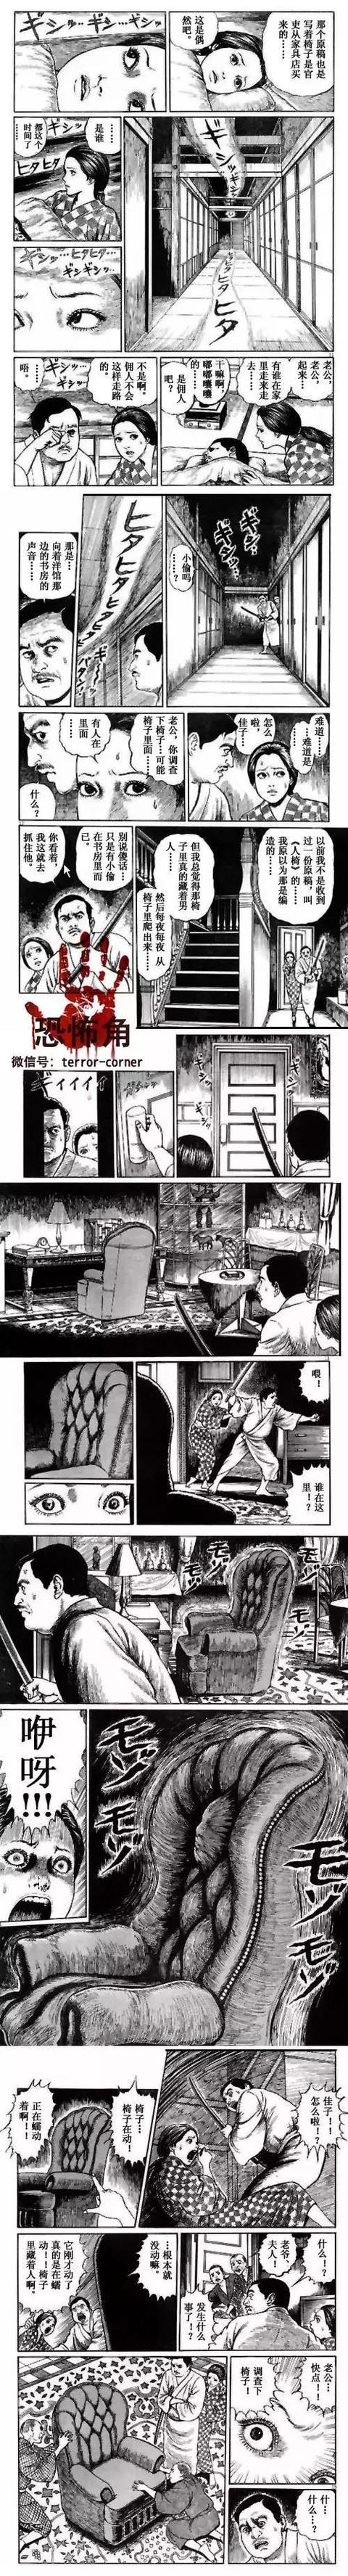 伊藤潤二恐怖漫畫 人間椅子 真正看得脊背發涼 M頭條